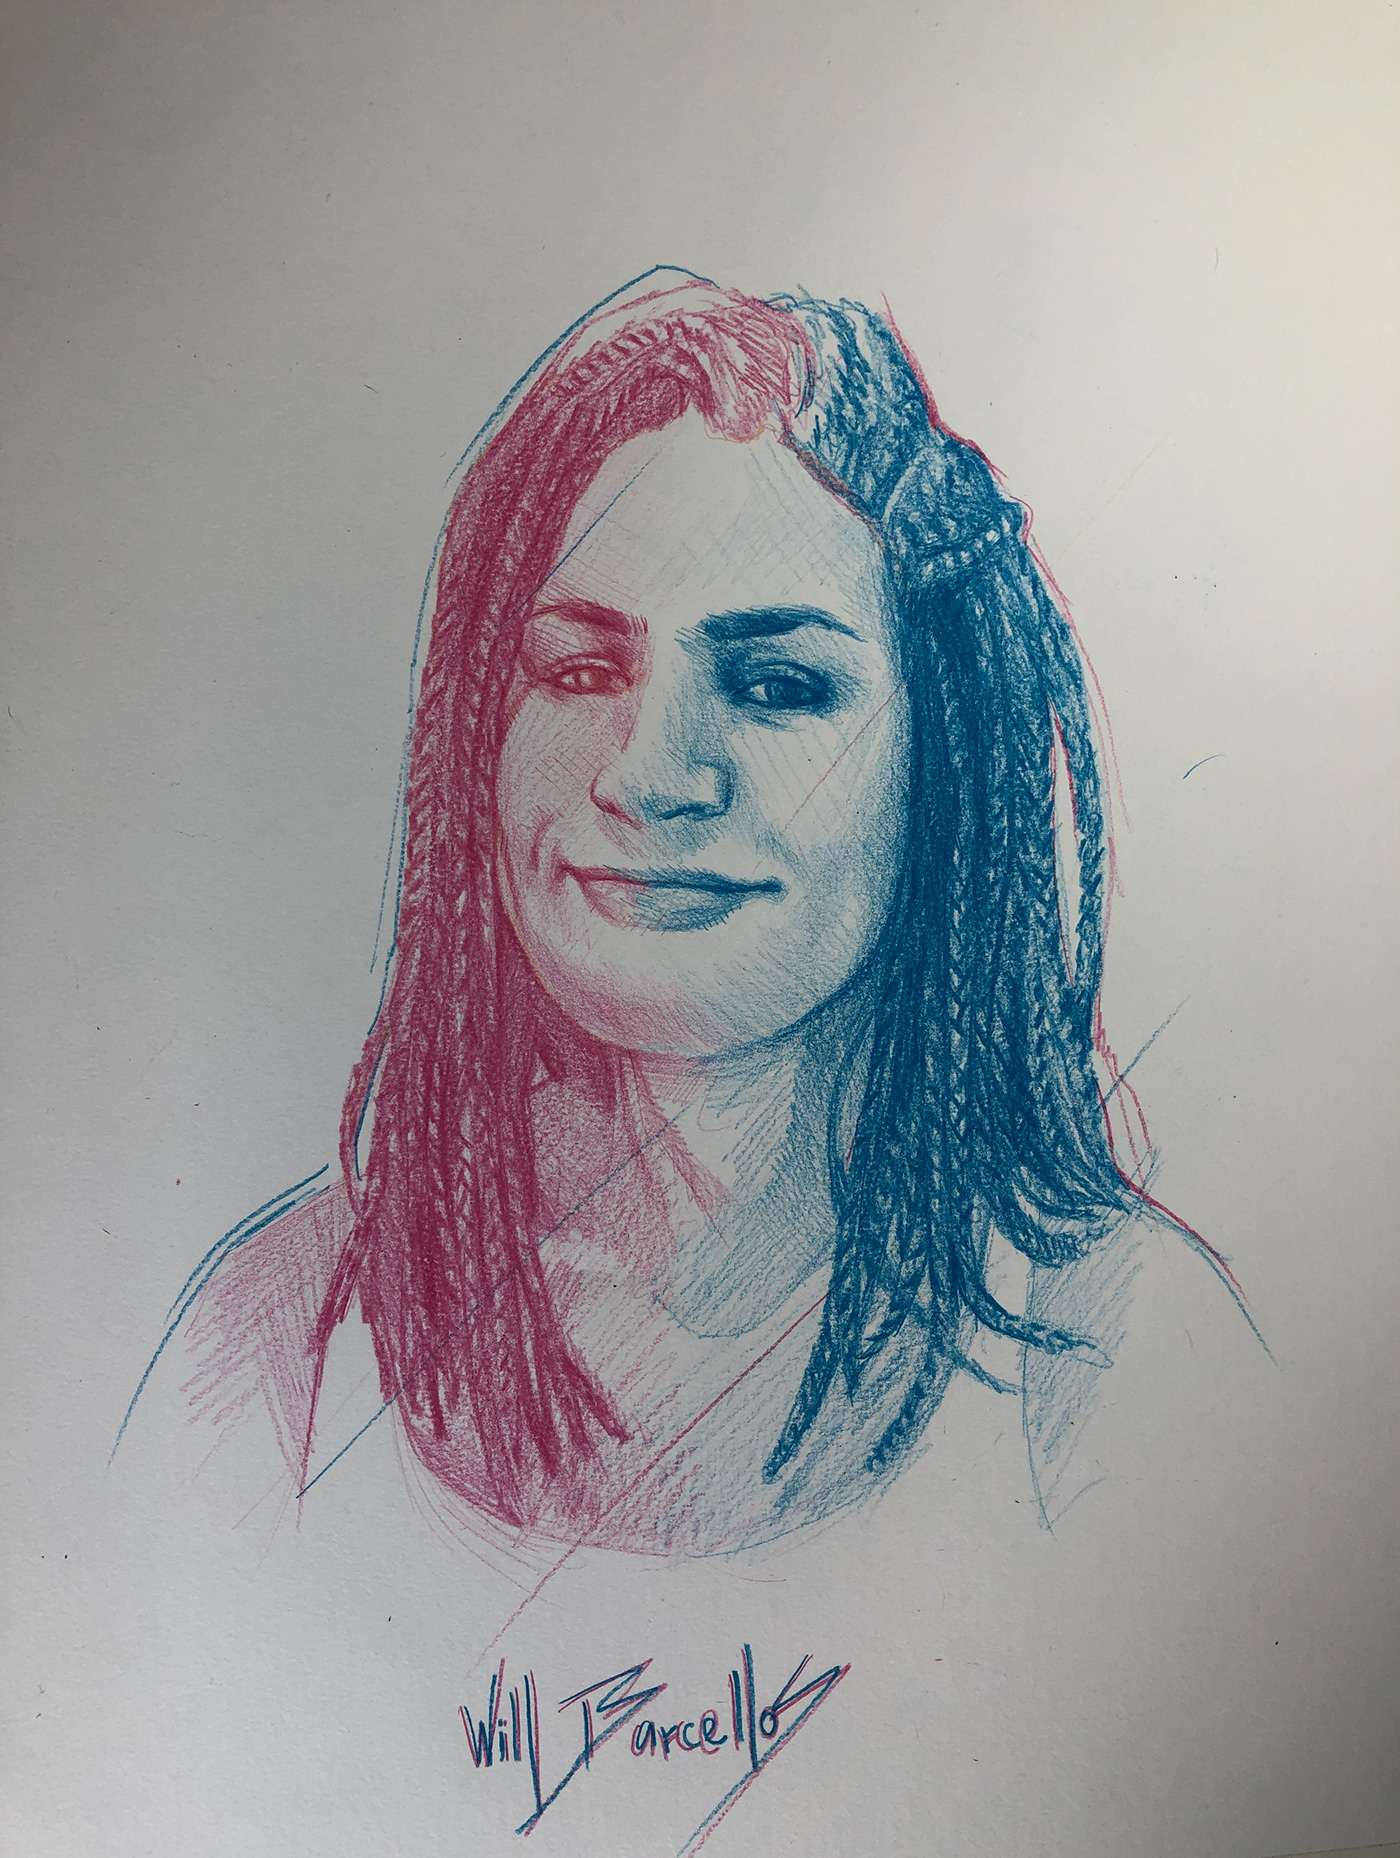 aquarela pencil TRANS transgender watercolor